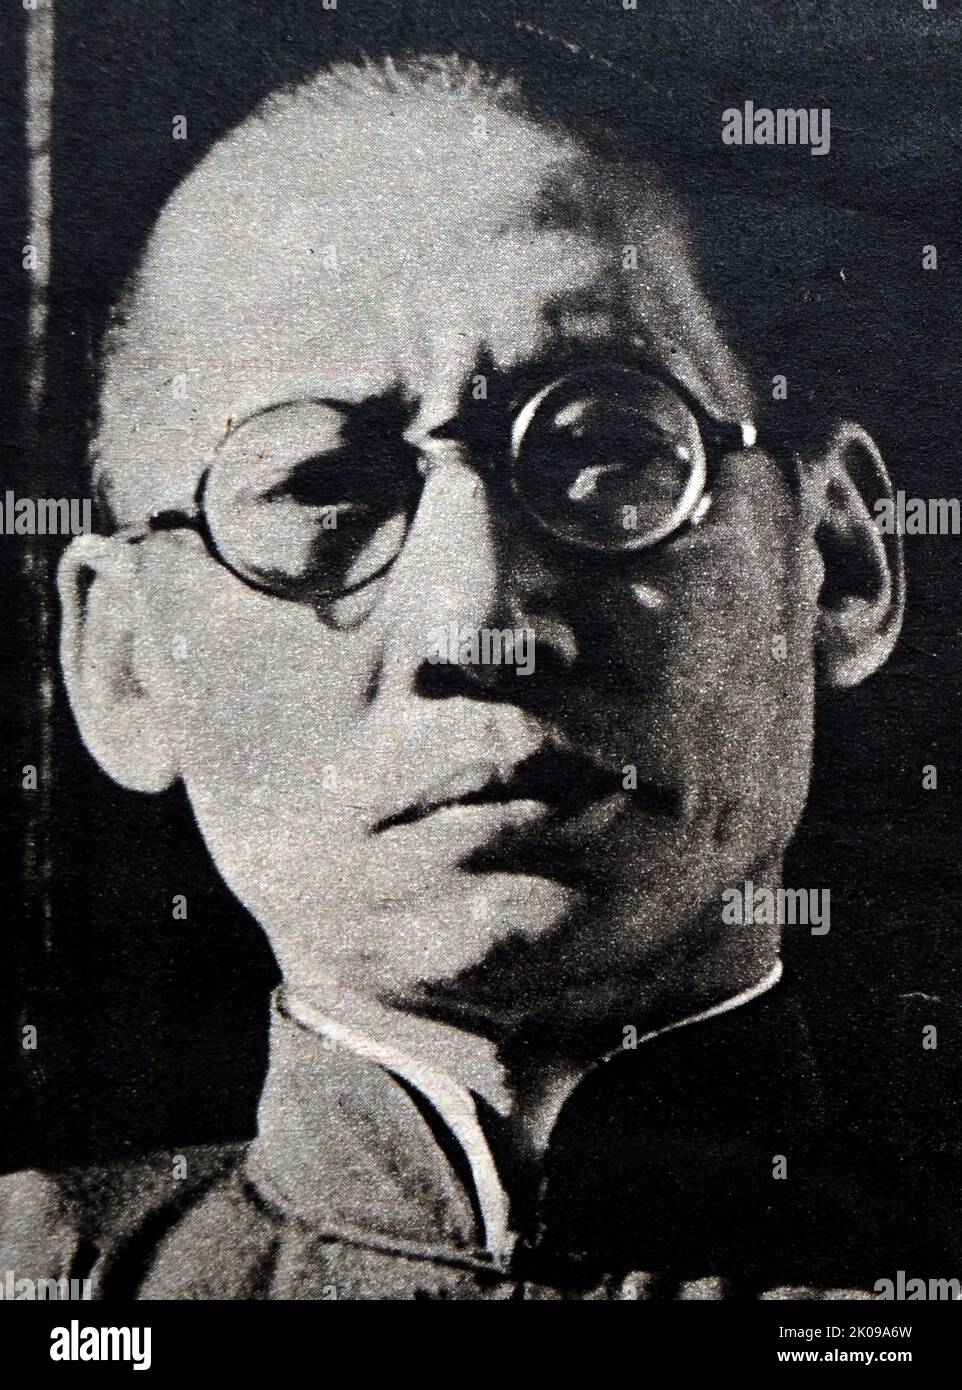 General Long Yun (27. November 1884 - 27. Juni 1962) war von 1927 bis Oktober 1945 Gouverneur und Kriegsherr der chinesischen Provinz Yunnan, als er von Du Yuming unter dem Befehl von Chiang Kai-shek durch einen Putsch (bekannt als "der Kunming-Vorfall") gestürzt wurde. Stockfoto